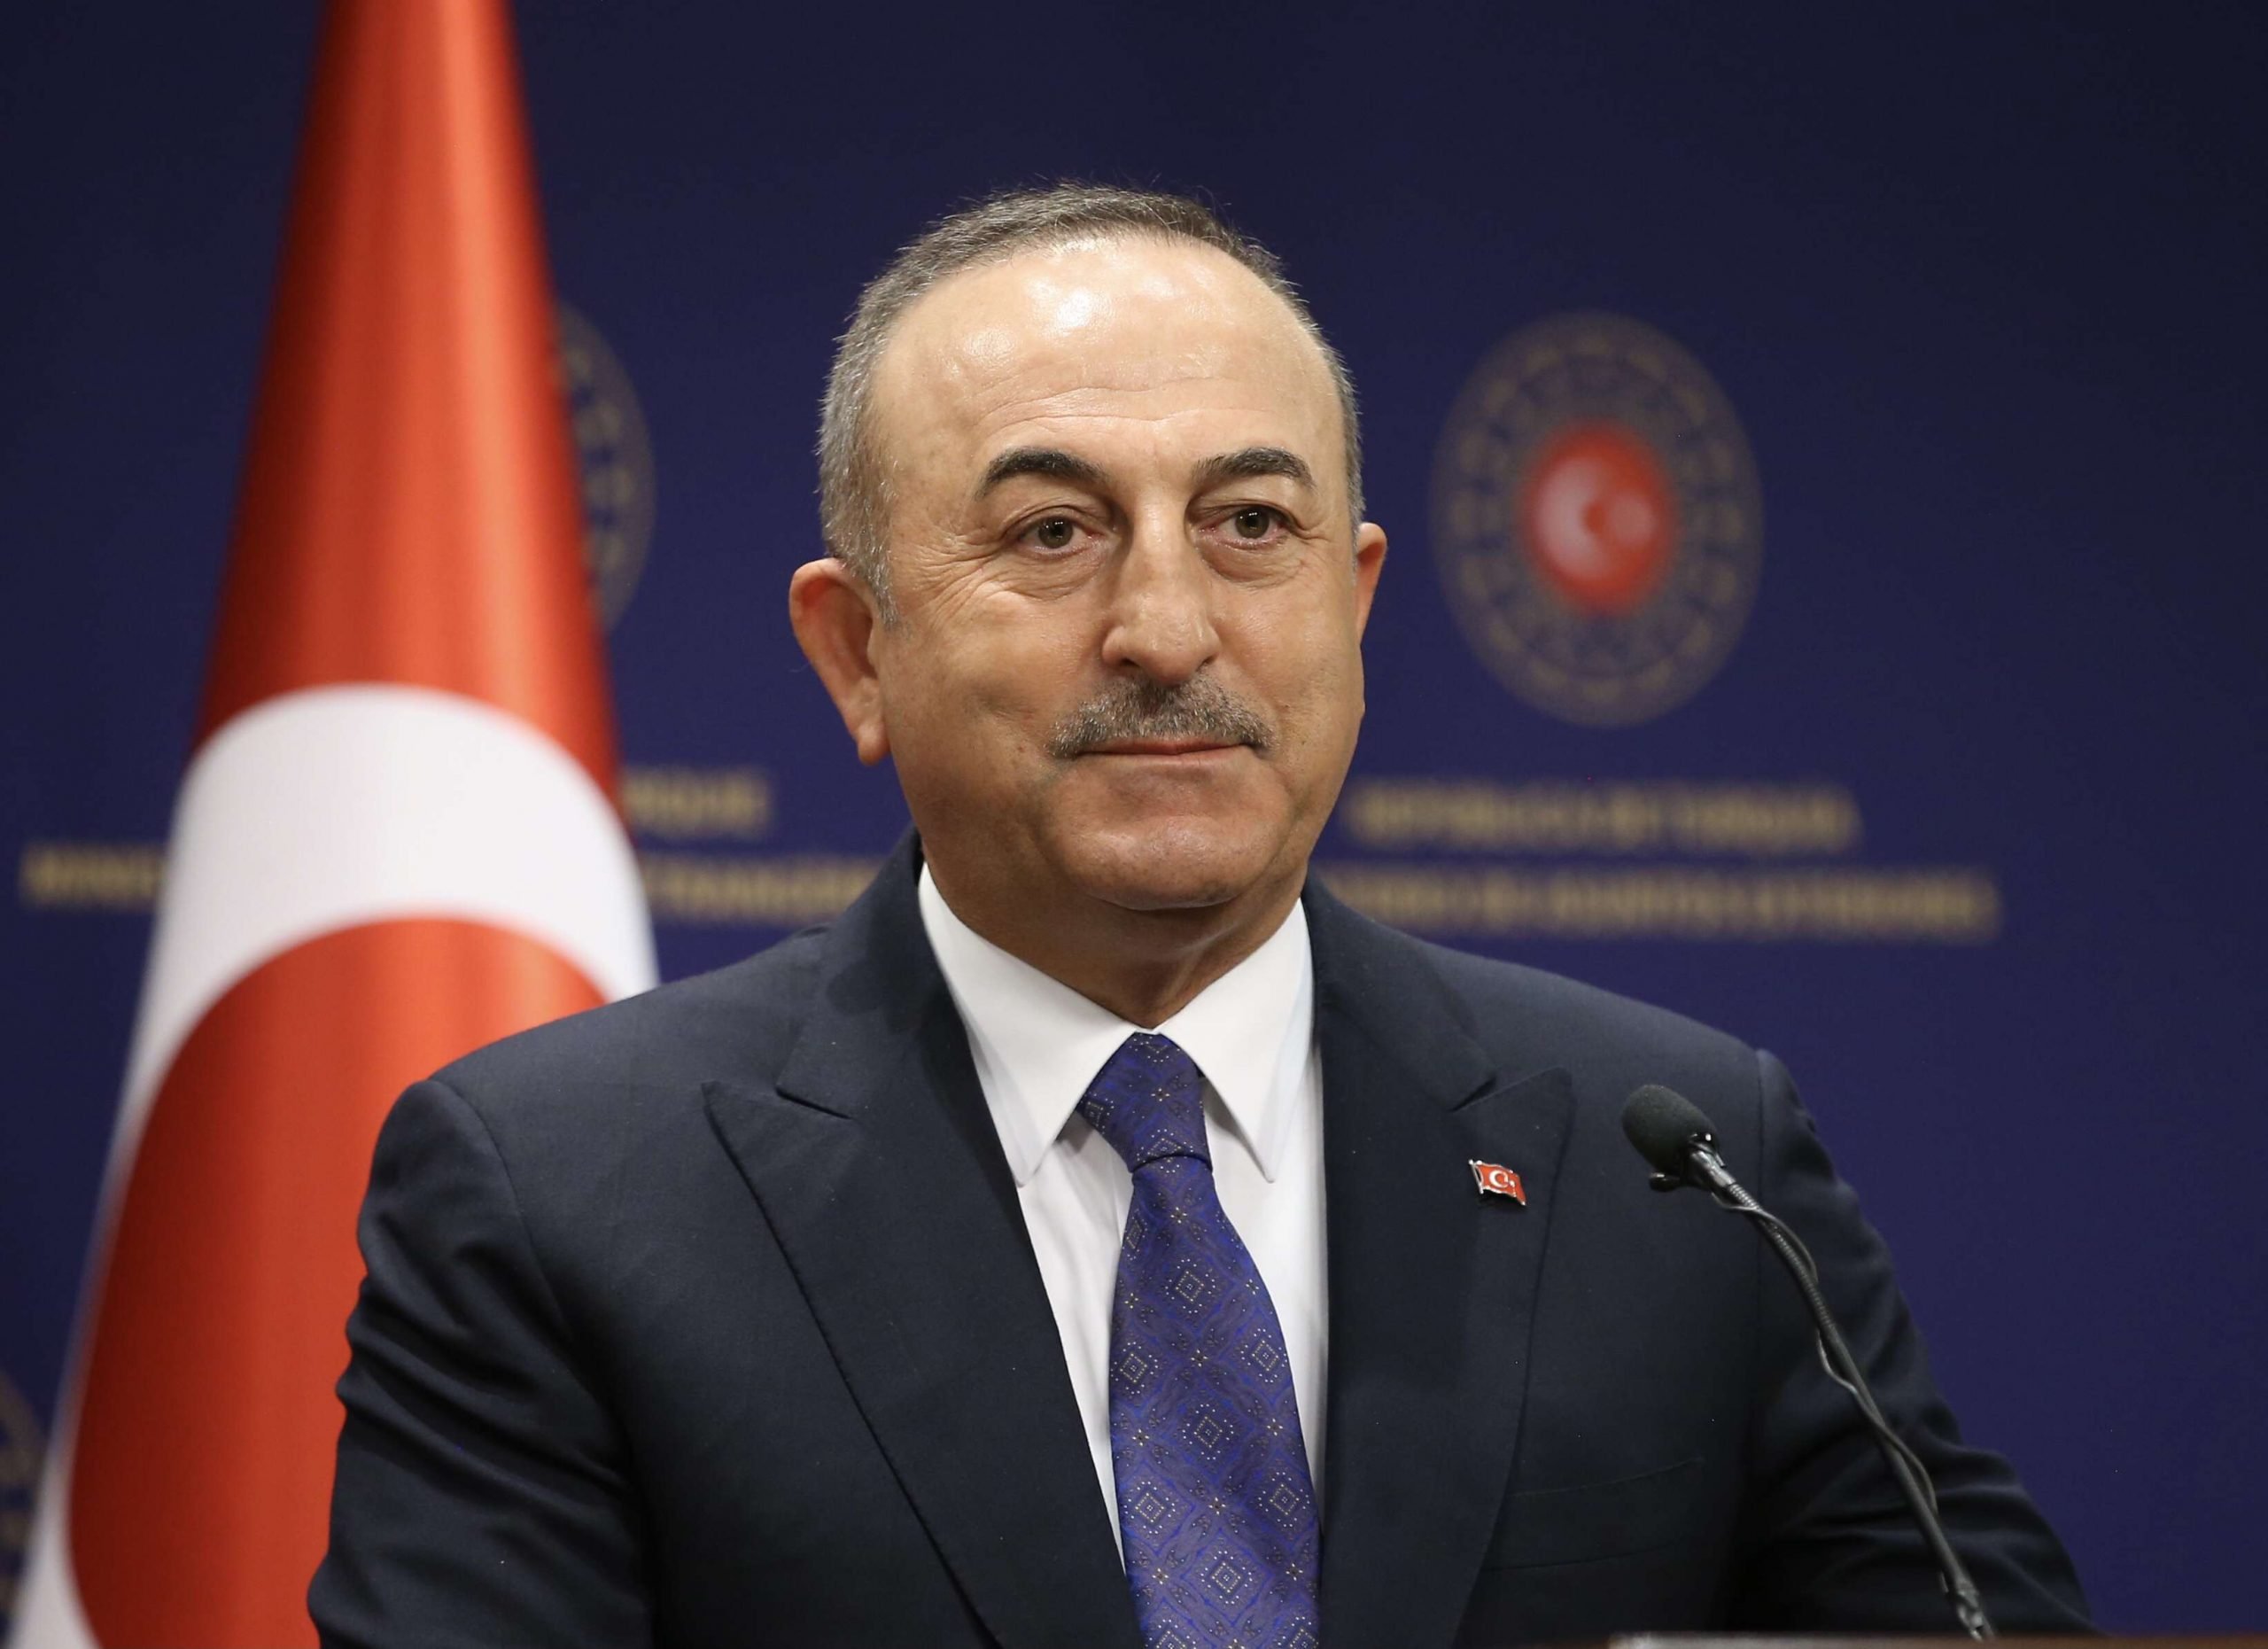 تركيا: قد نتفاوض مع مصر على ترسيم الحدود إذا سمحت الظروف